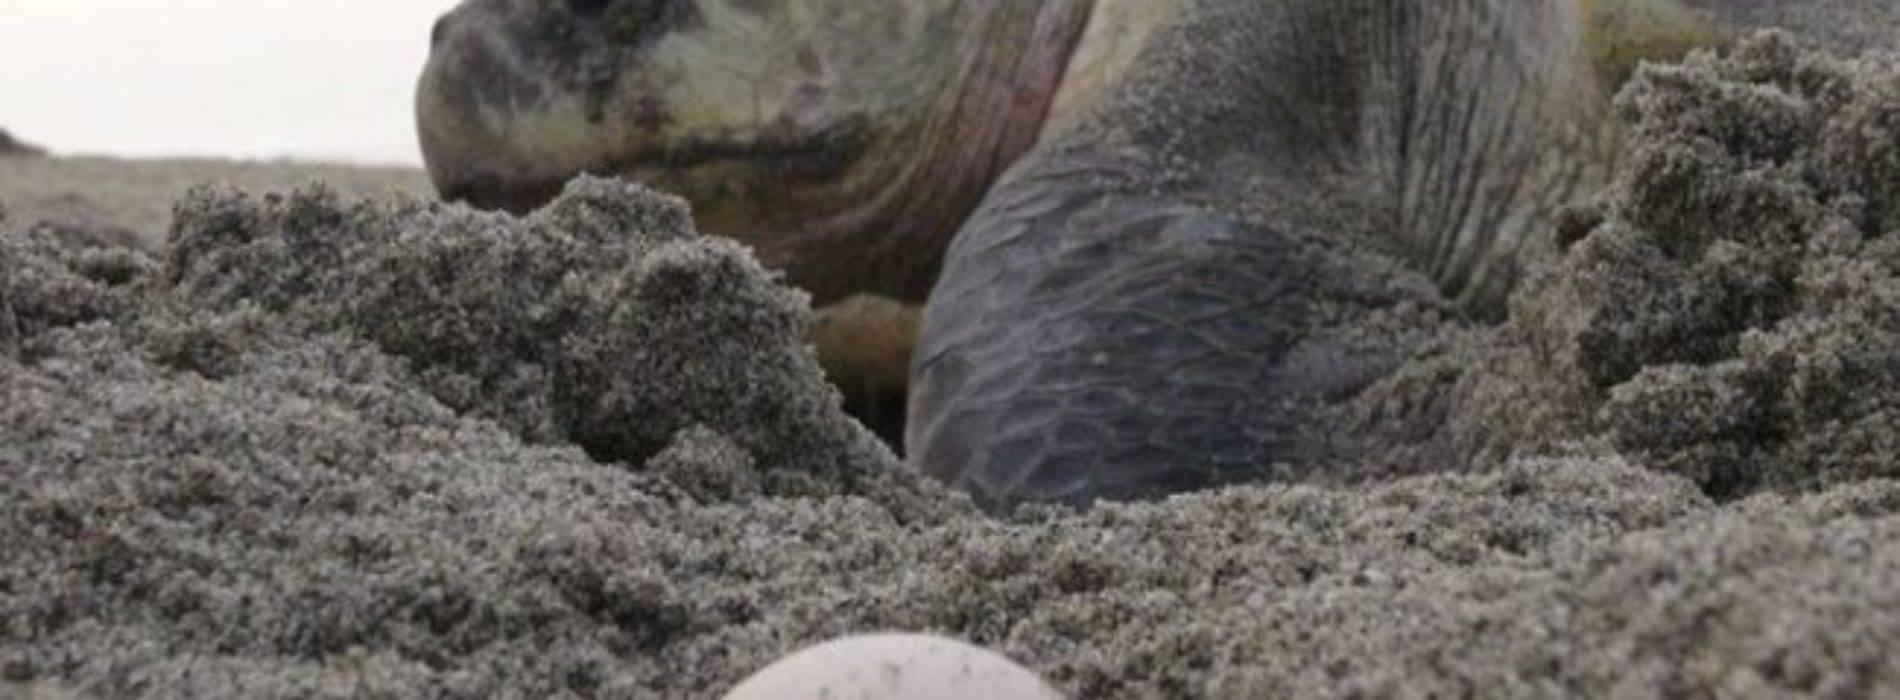 Federales aseguran más de mil huevos de tortuga en
Oaxaca